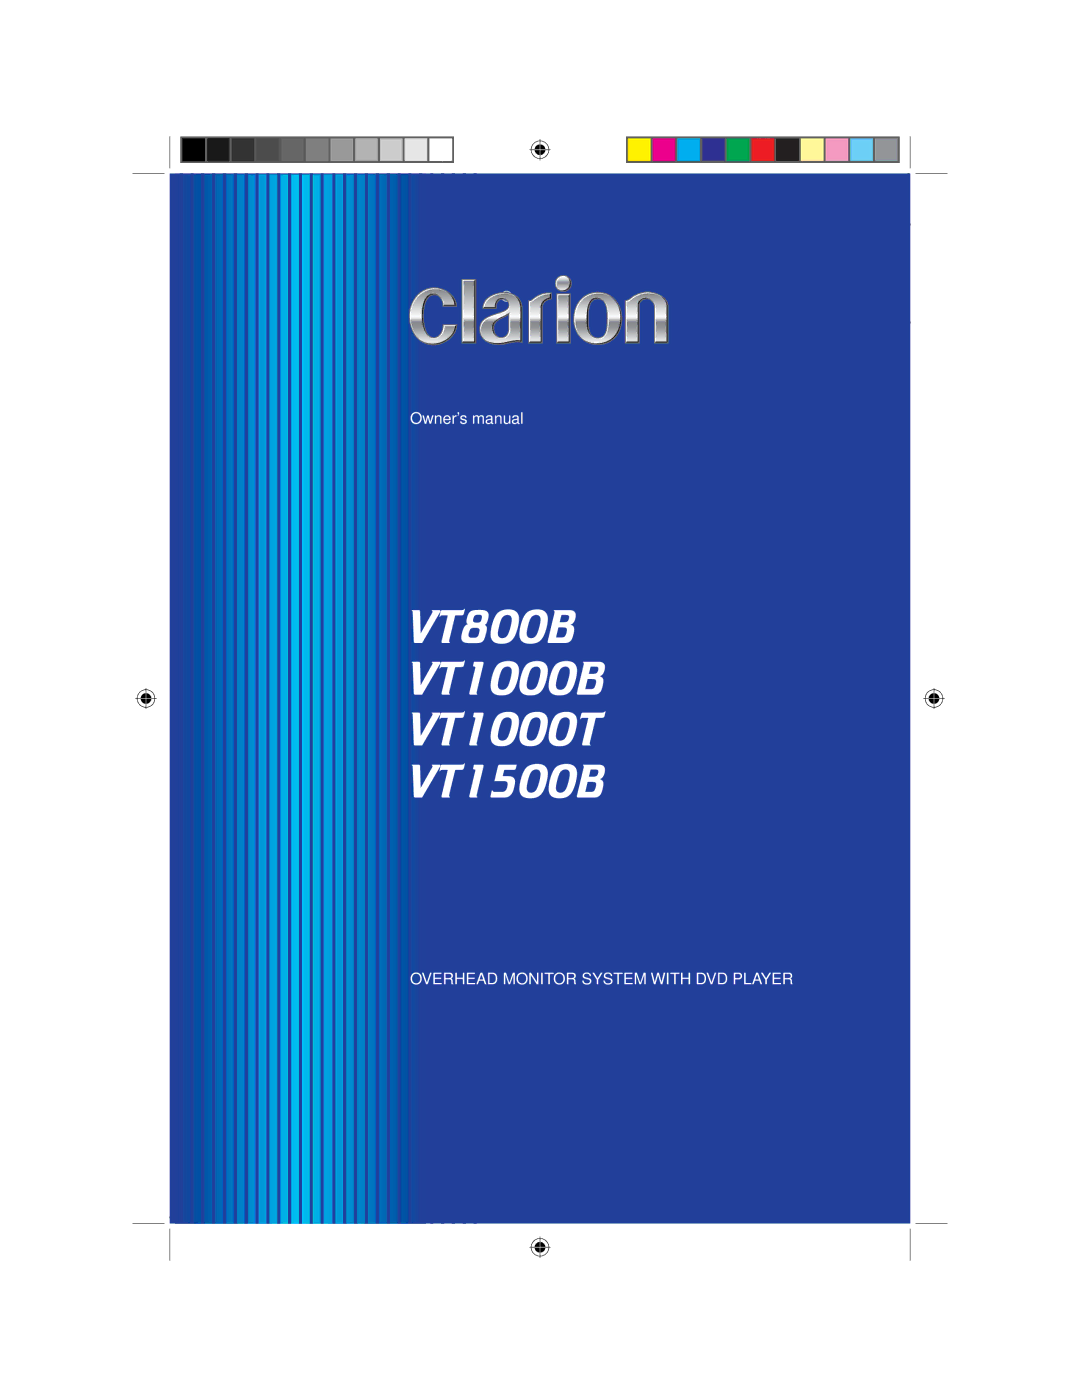 Clarion owner manual VT800B VT1000B VT1000T VT1500B 